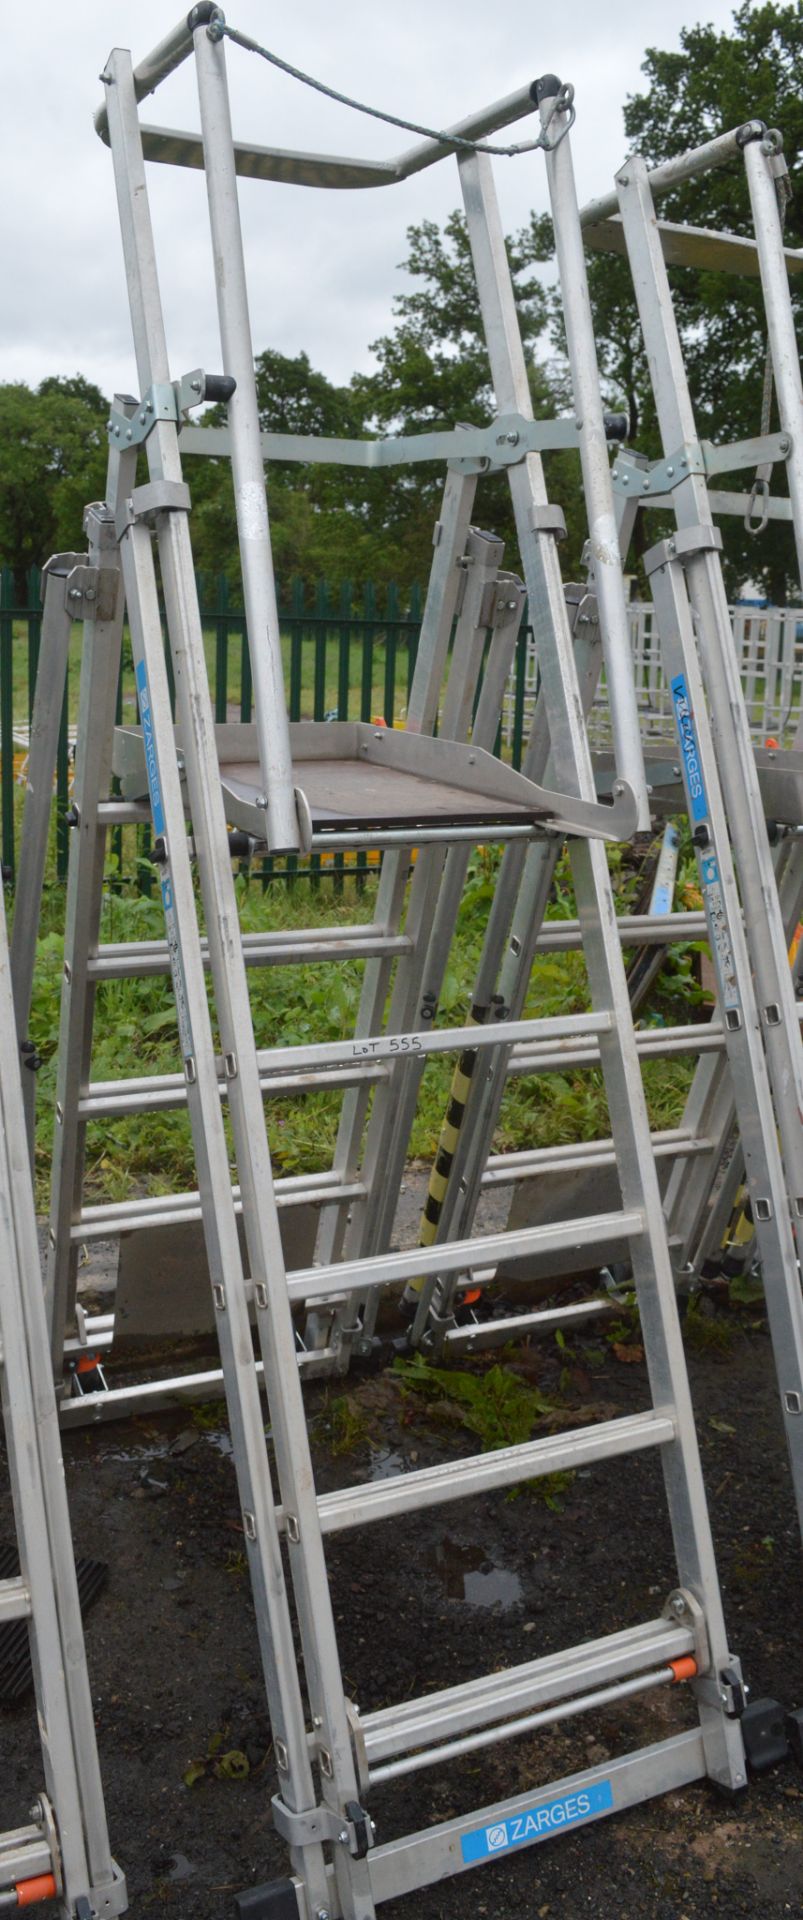 Zarges aluminium podium ladder A844582 - Image 2 of 2